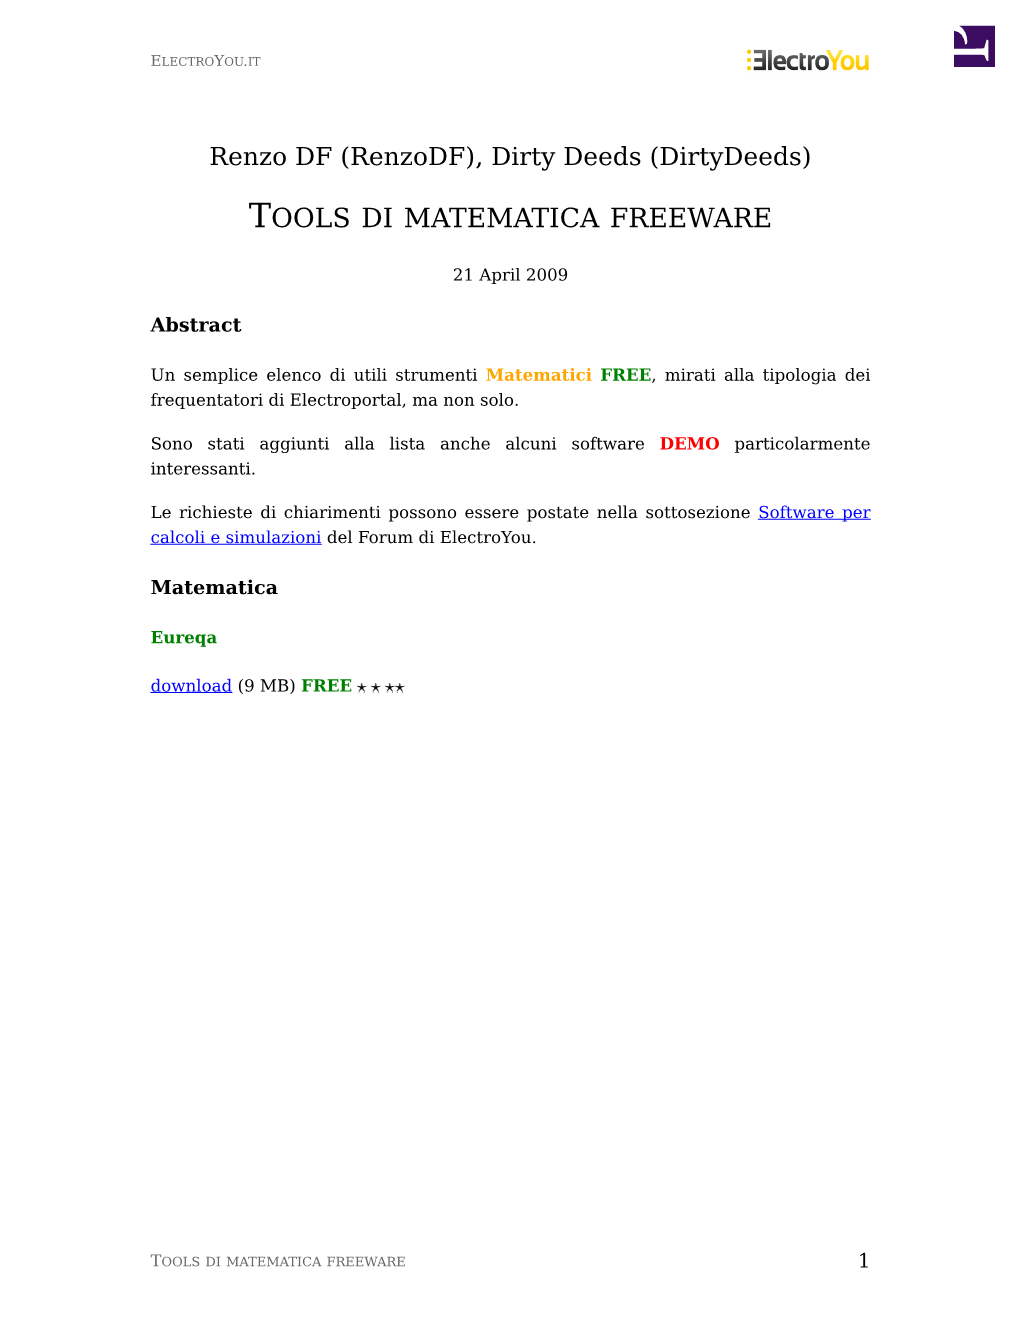 Tools Di Matematica Freeware